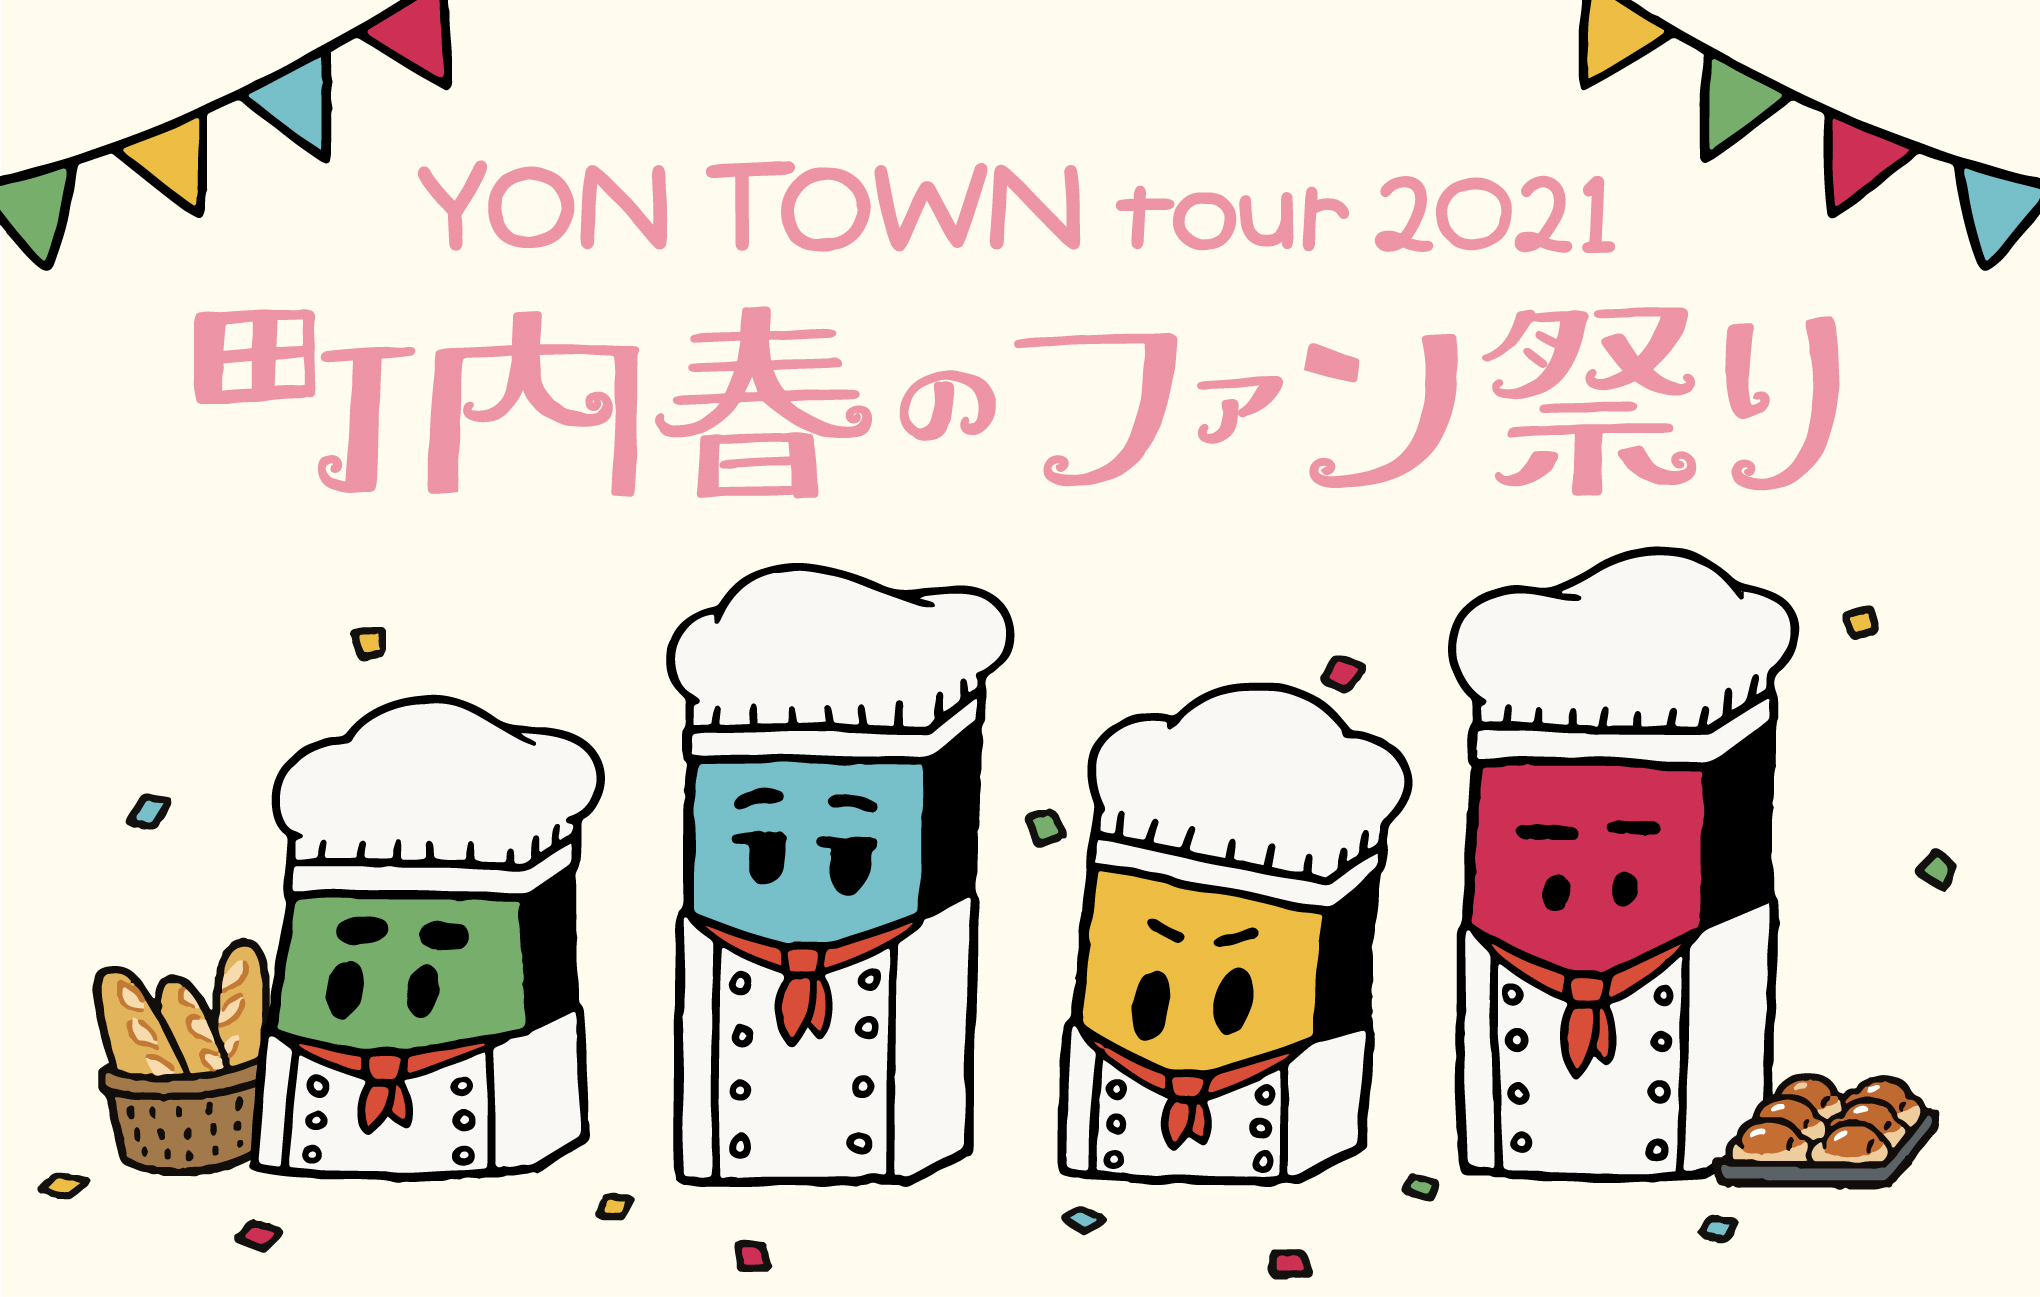 【大阪】YON TOWN tour 2021 〜町内春のファン祭り〜 (なんばHatch)